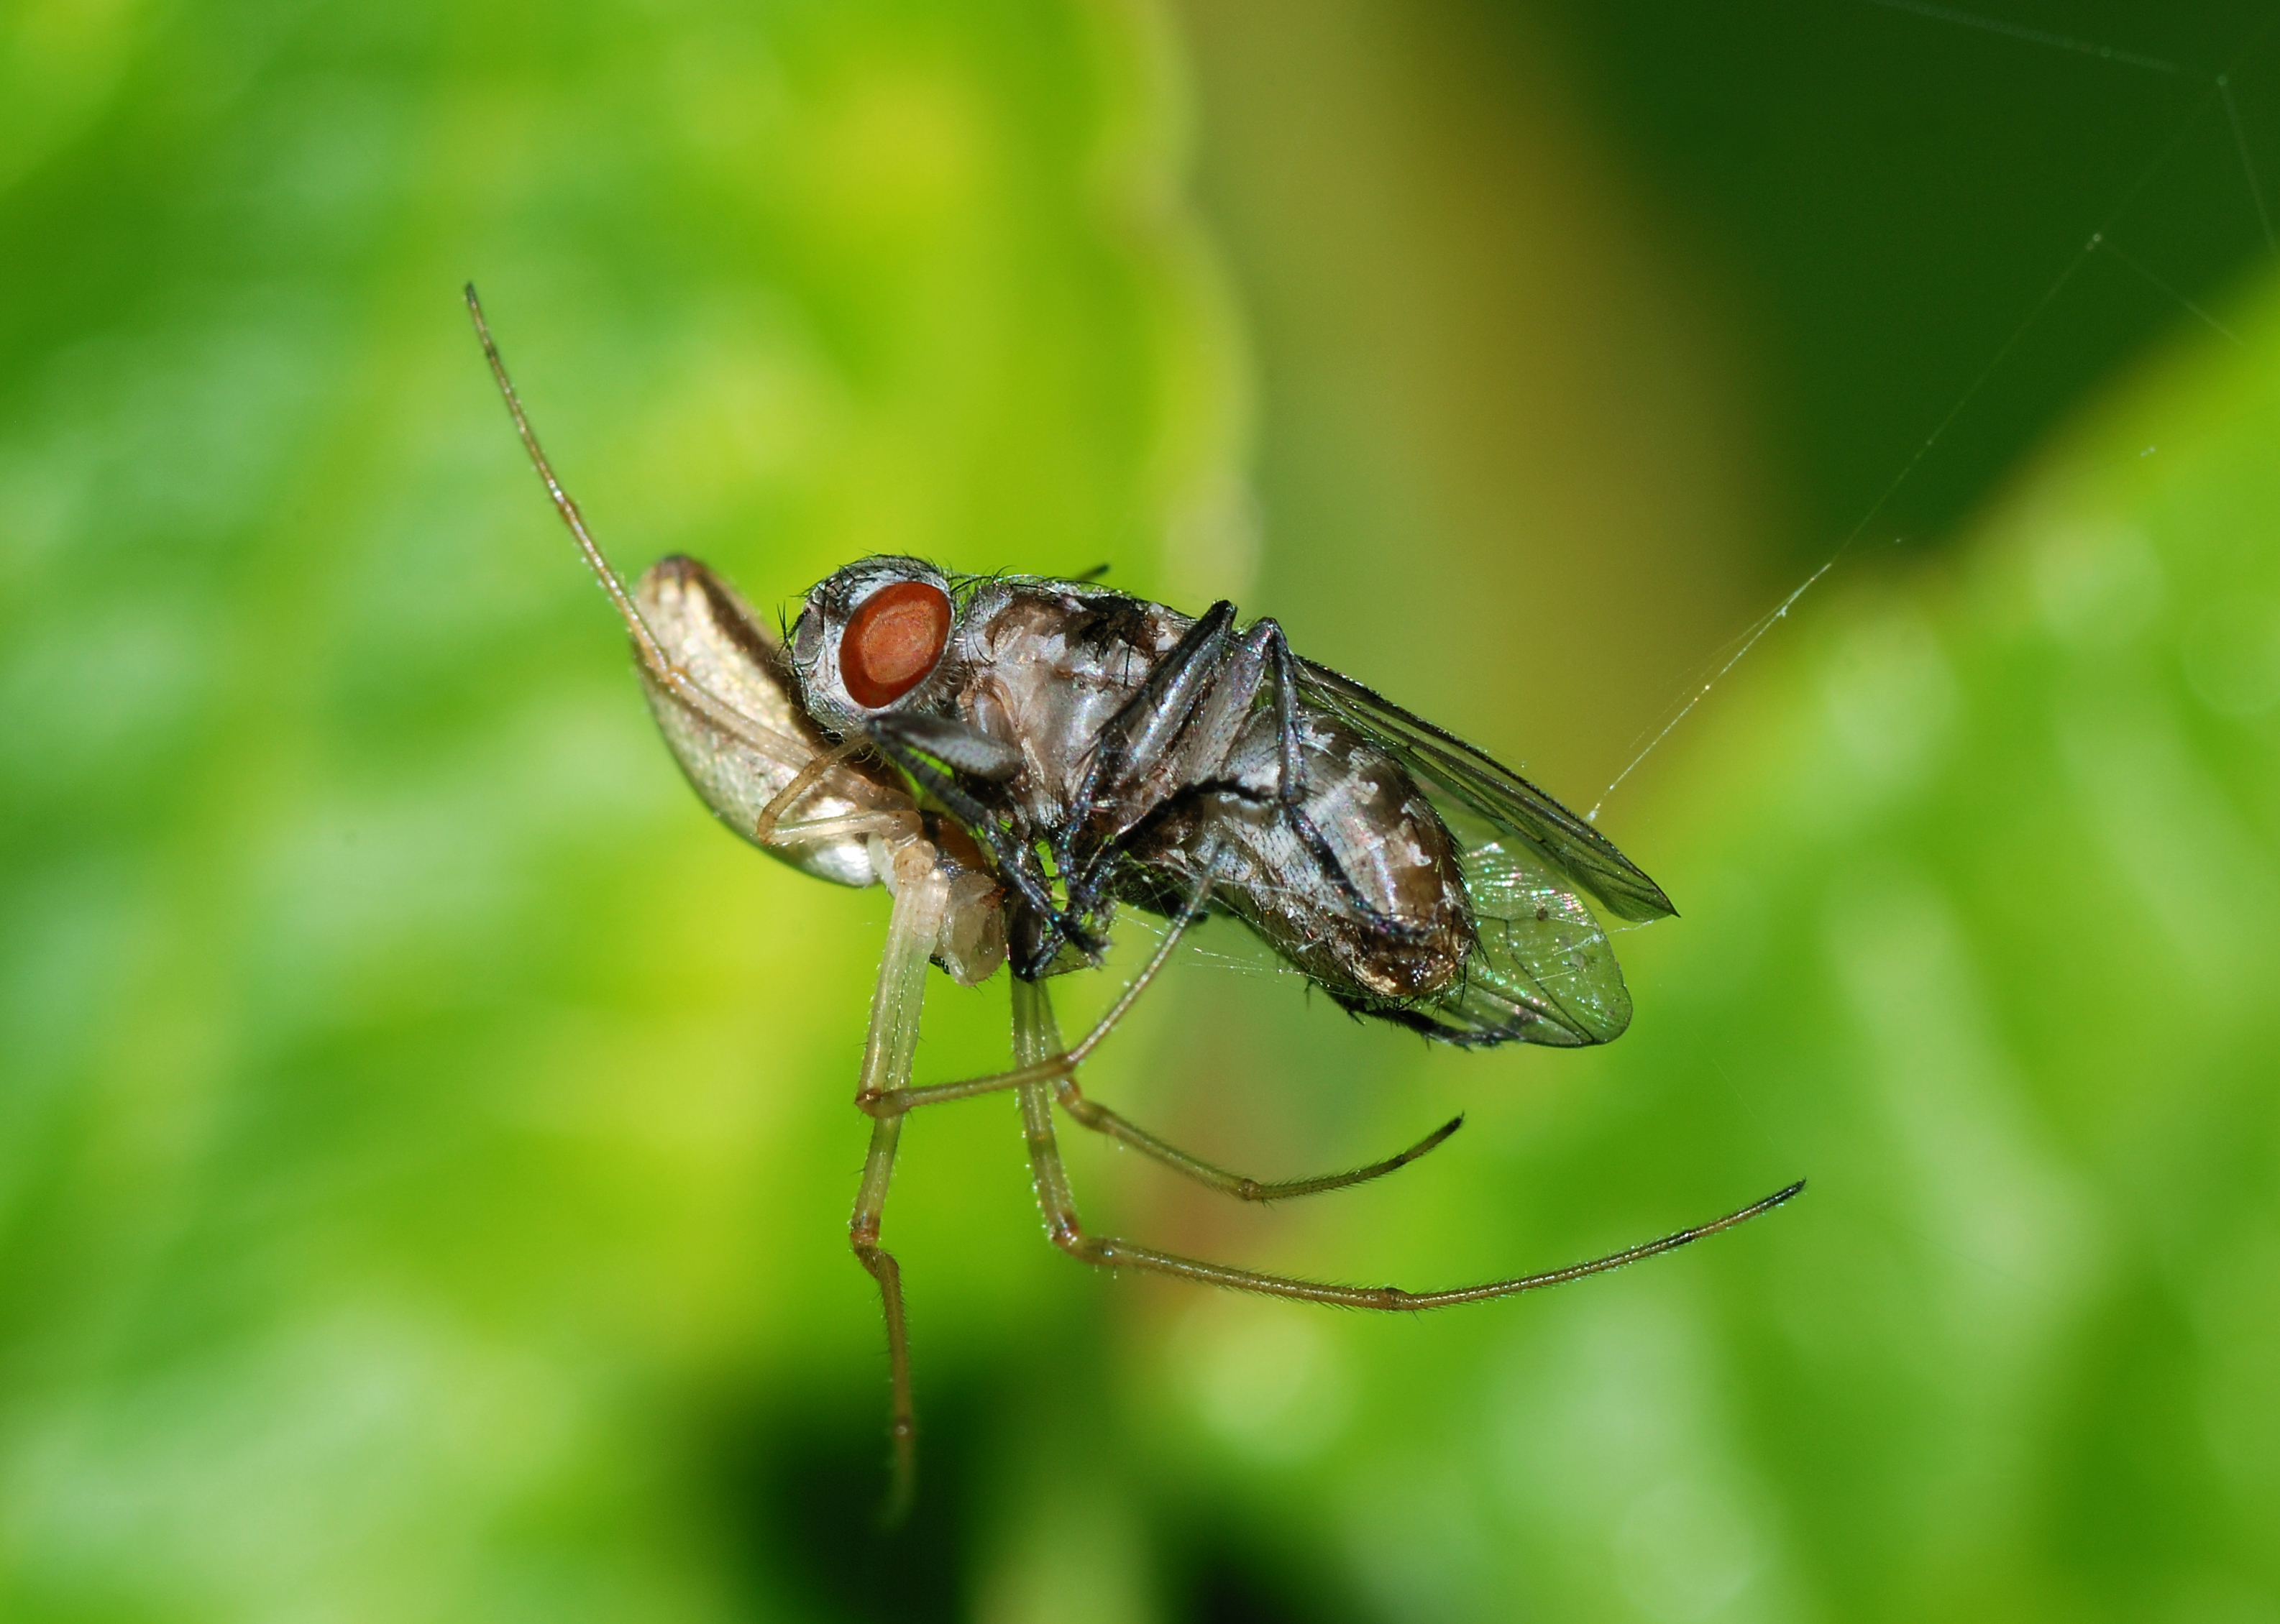 Longjawed Orbweaver (Tetragnatha Species) feeding on a fly by Alvesgaspar